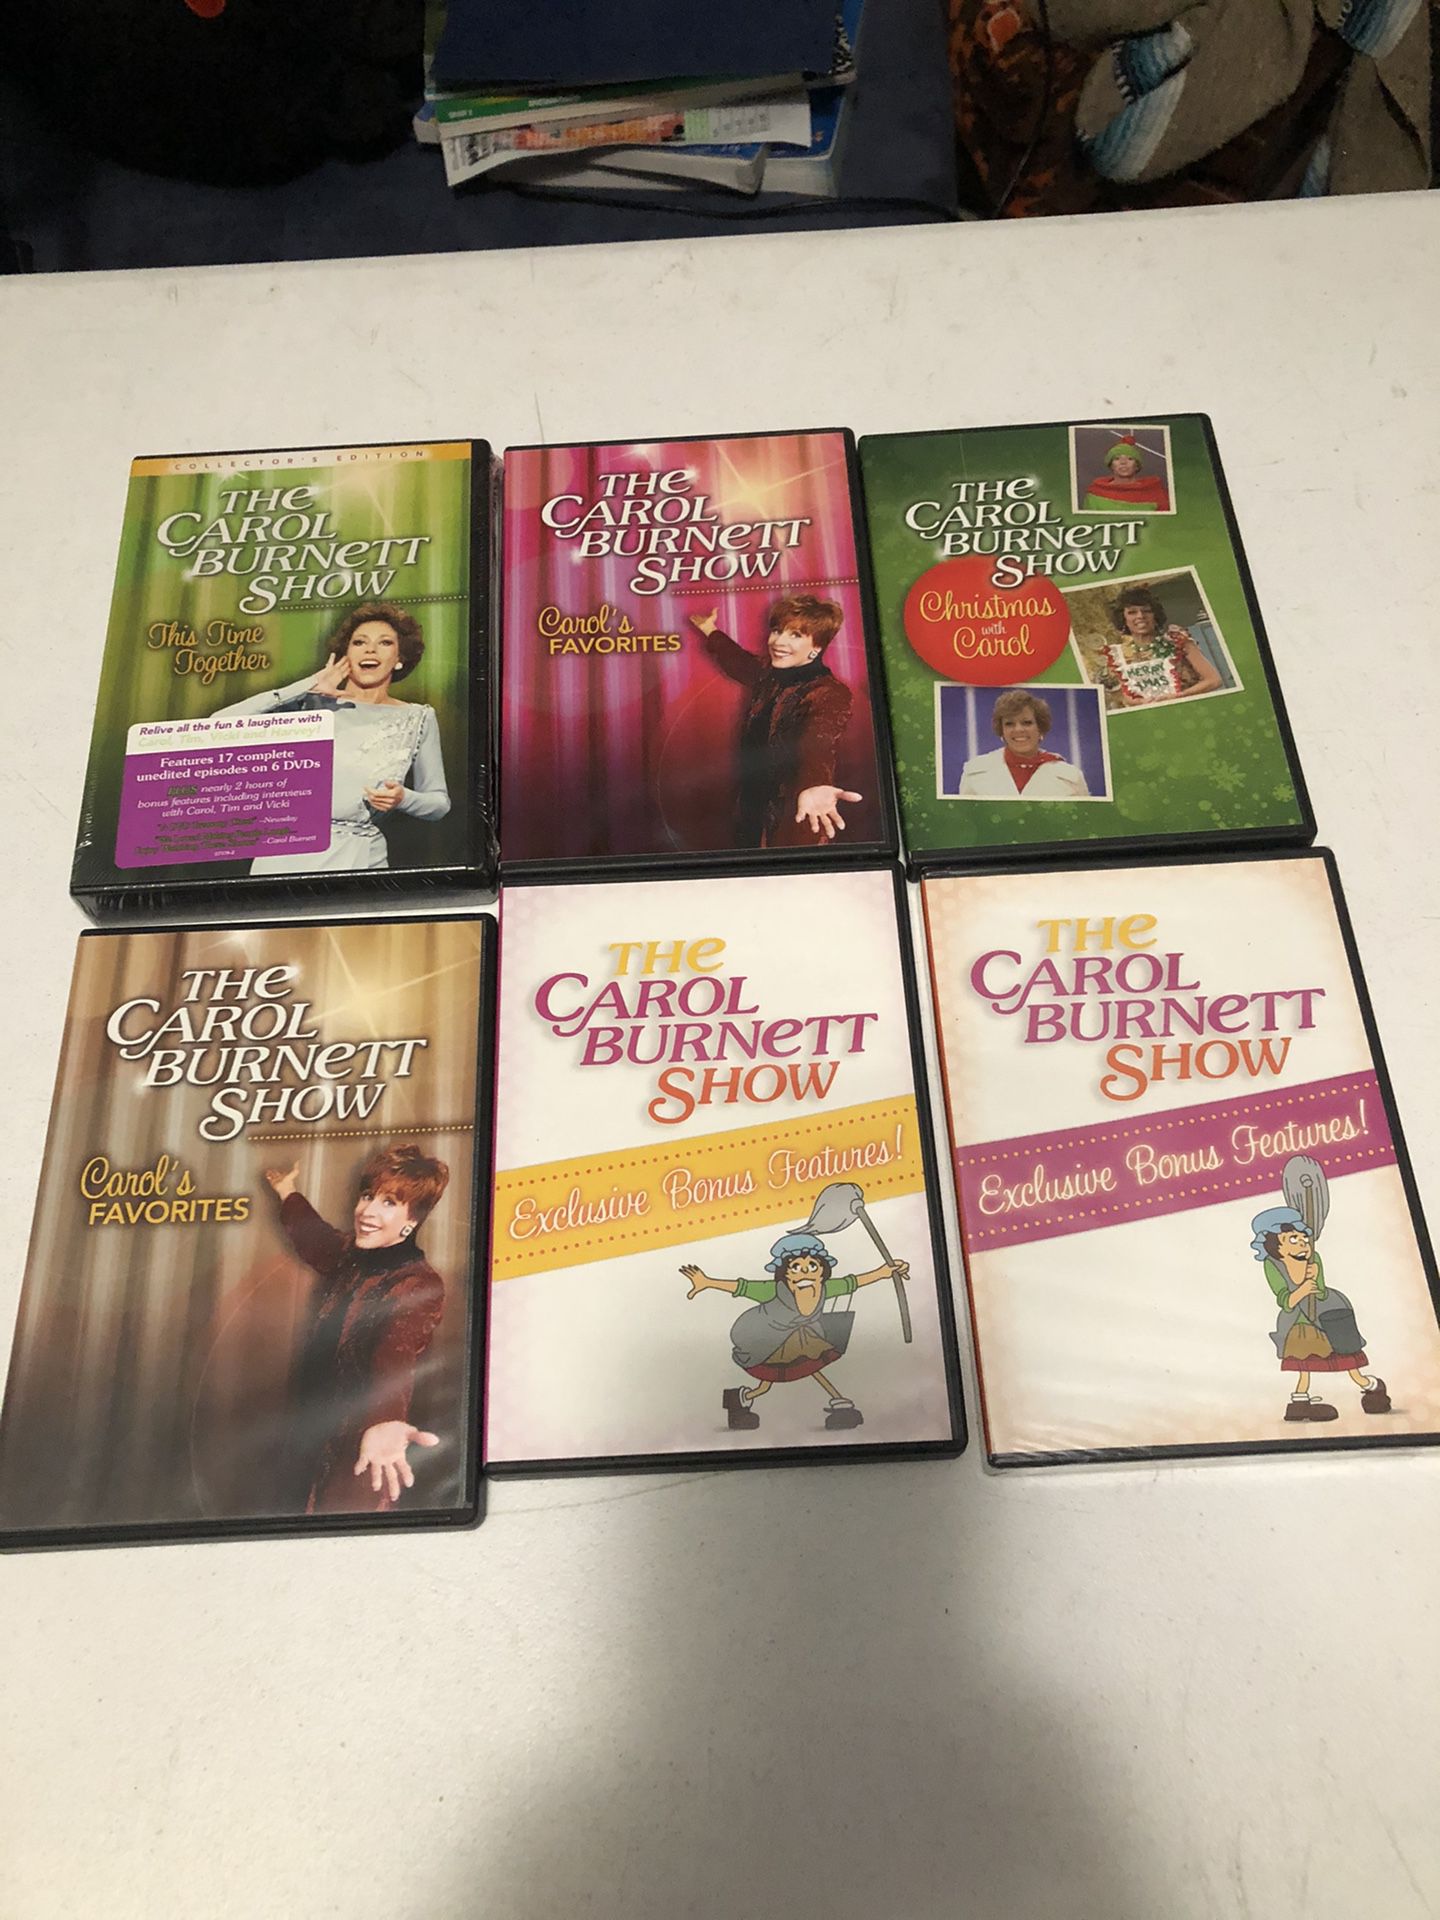 The Carol Burnett Show DVD’s